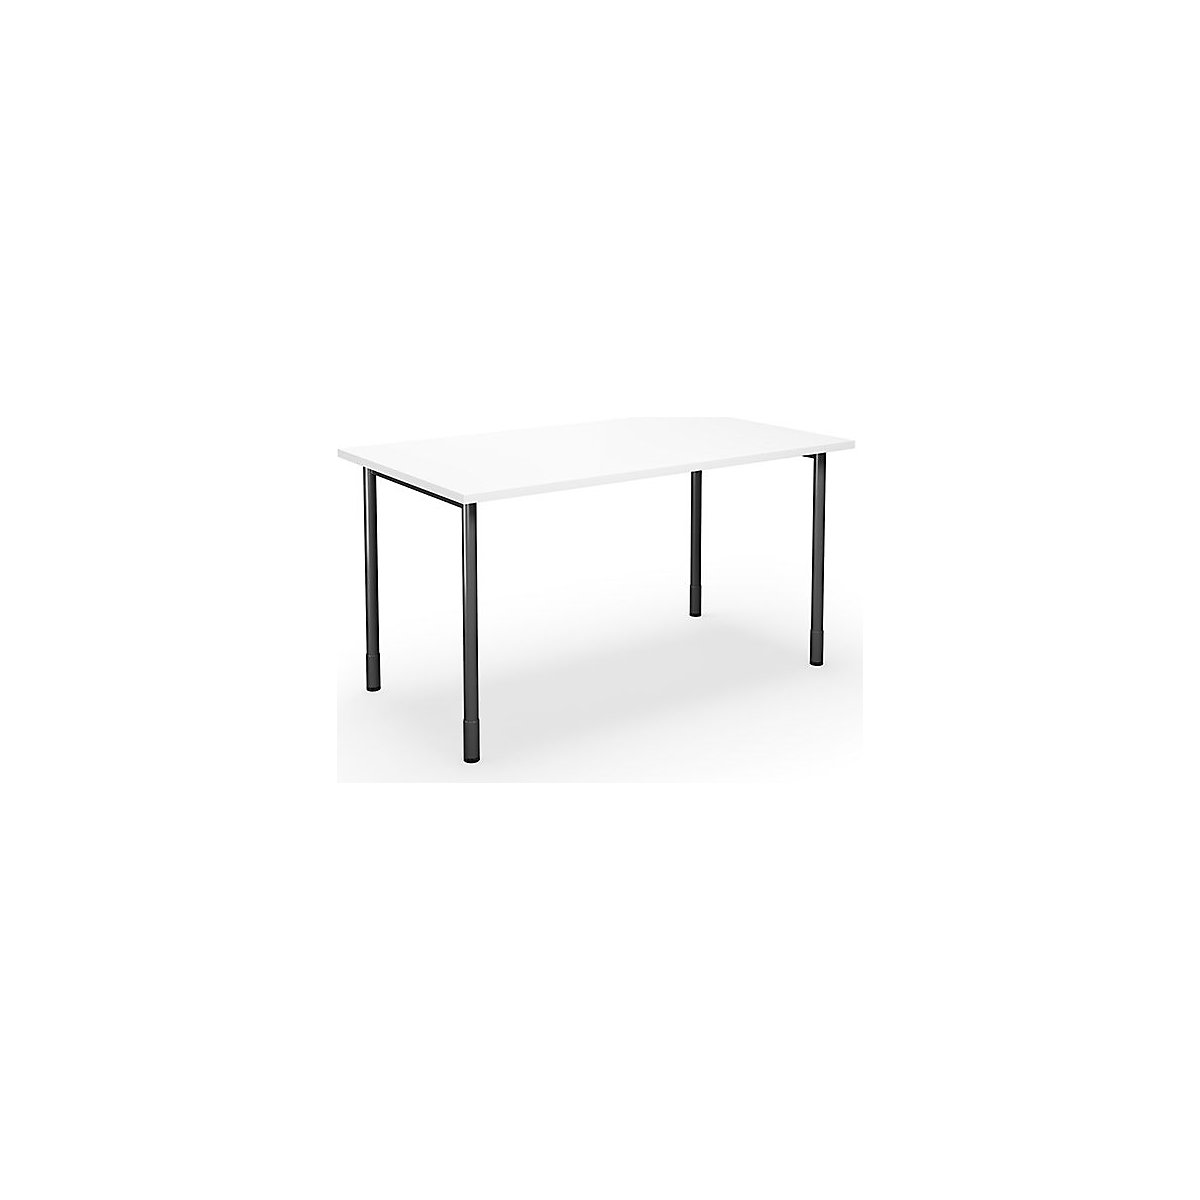 DUO-C multi-purpose desk, straight tabletop, WxD 1400 x 800 mm, white, black-3